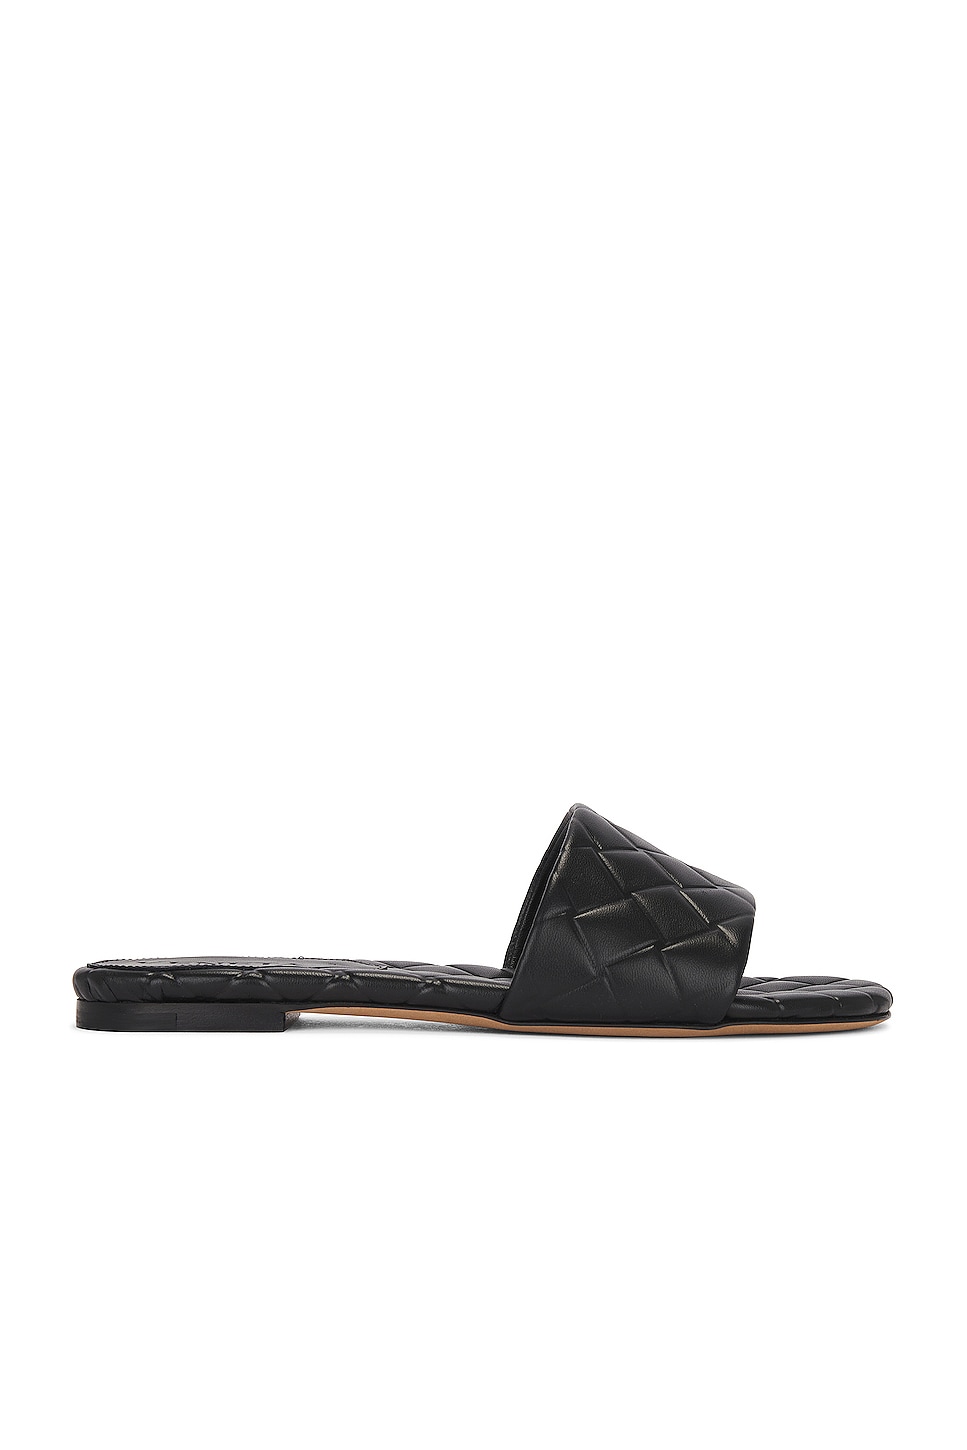 Image 1 of Bottega Veneta Flat Sandal in Black